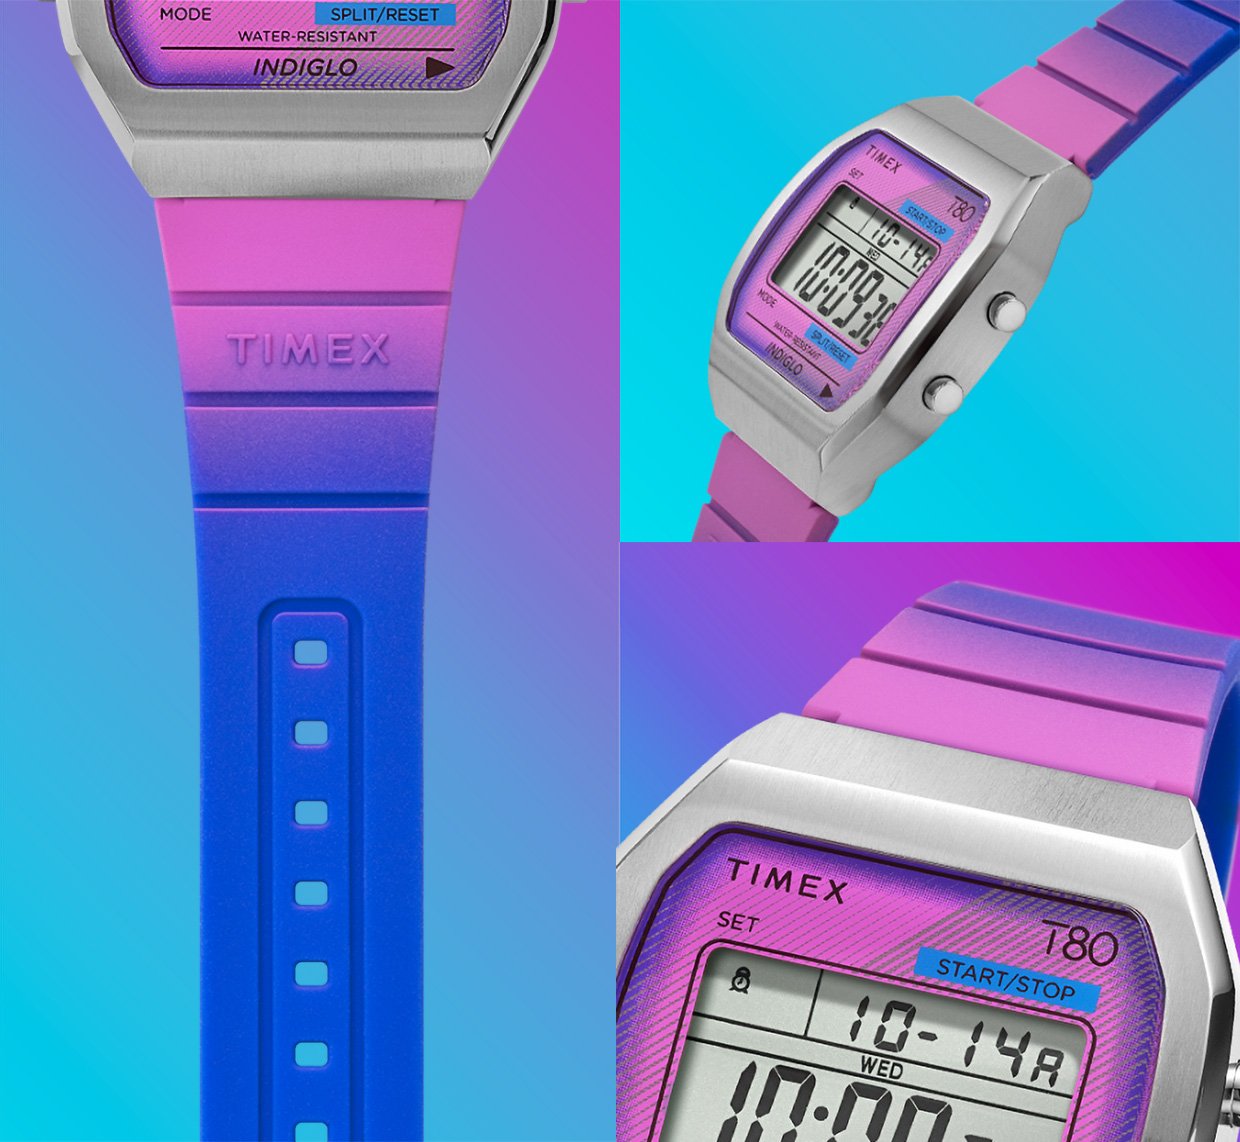 Timex T80 Gradient Watches